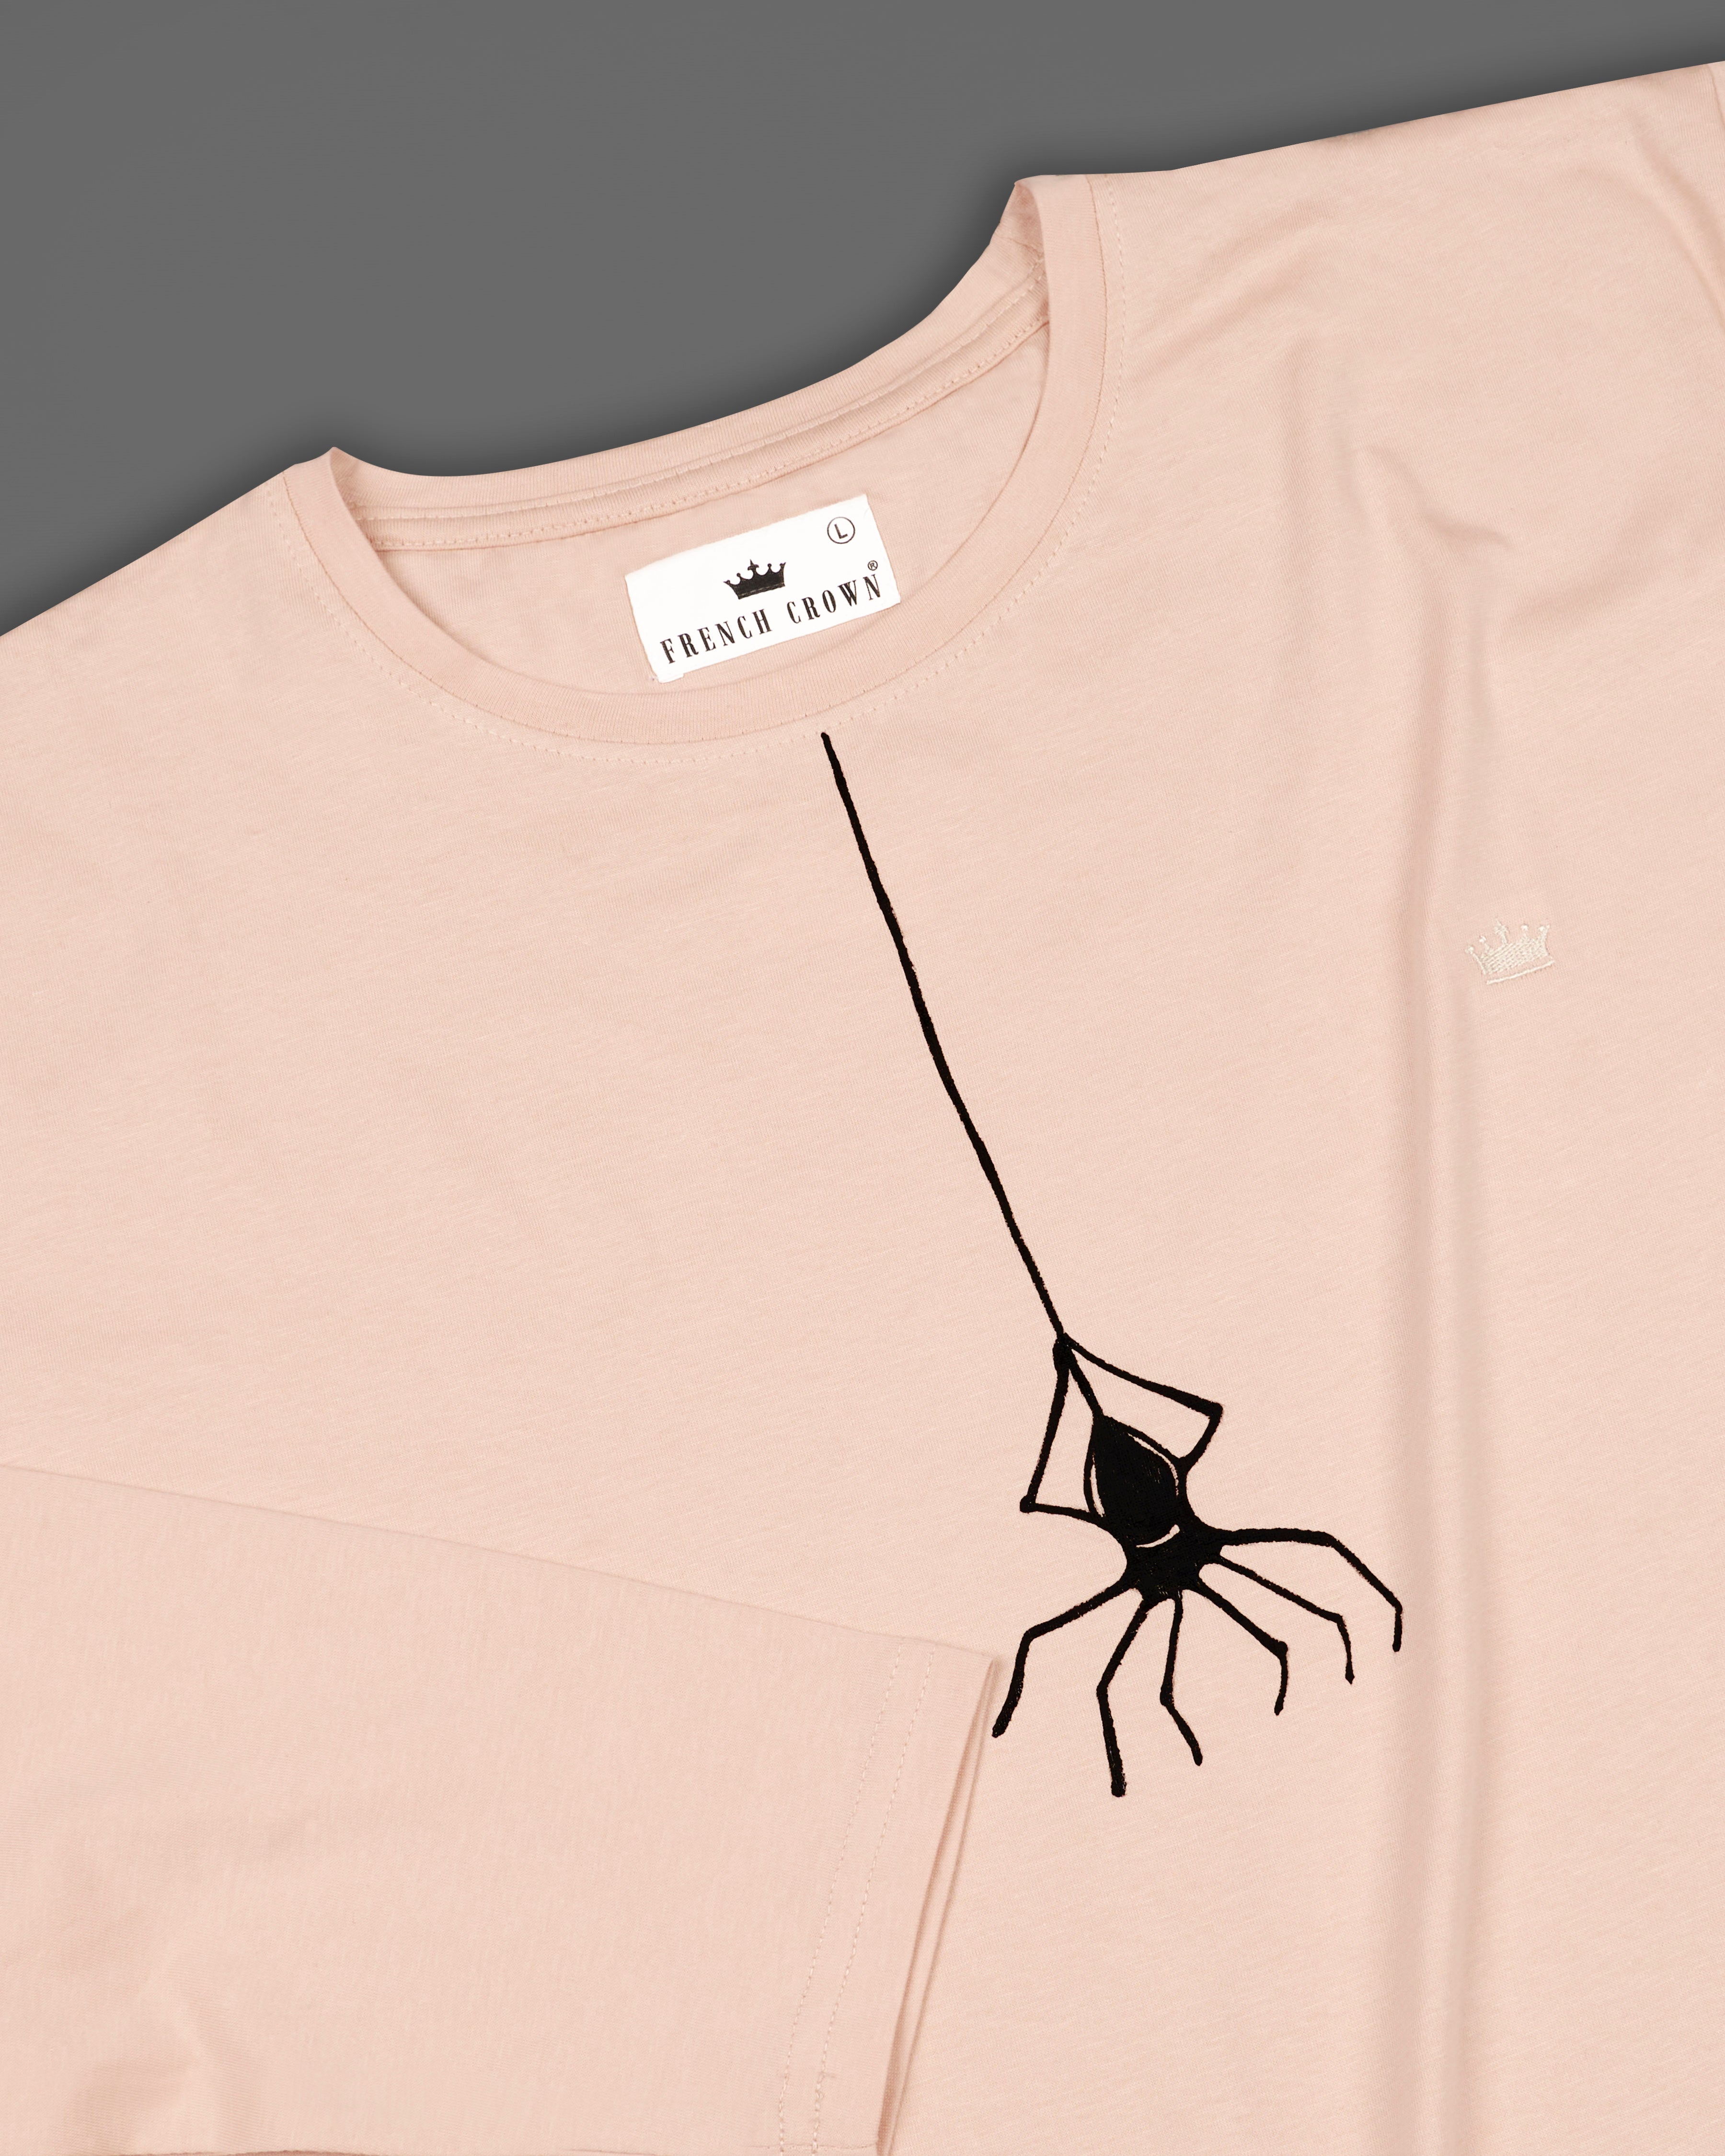 Desert Sand Beige Spider Hand-Painted Organic Cotton T-Shirt TS082-W01-S, TS082-W01-M, TS082-W01-L, TS082-W01-XL, TS082-W01-XXL 